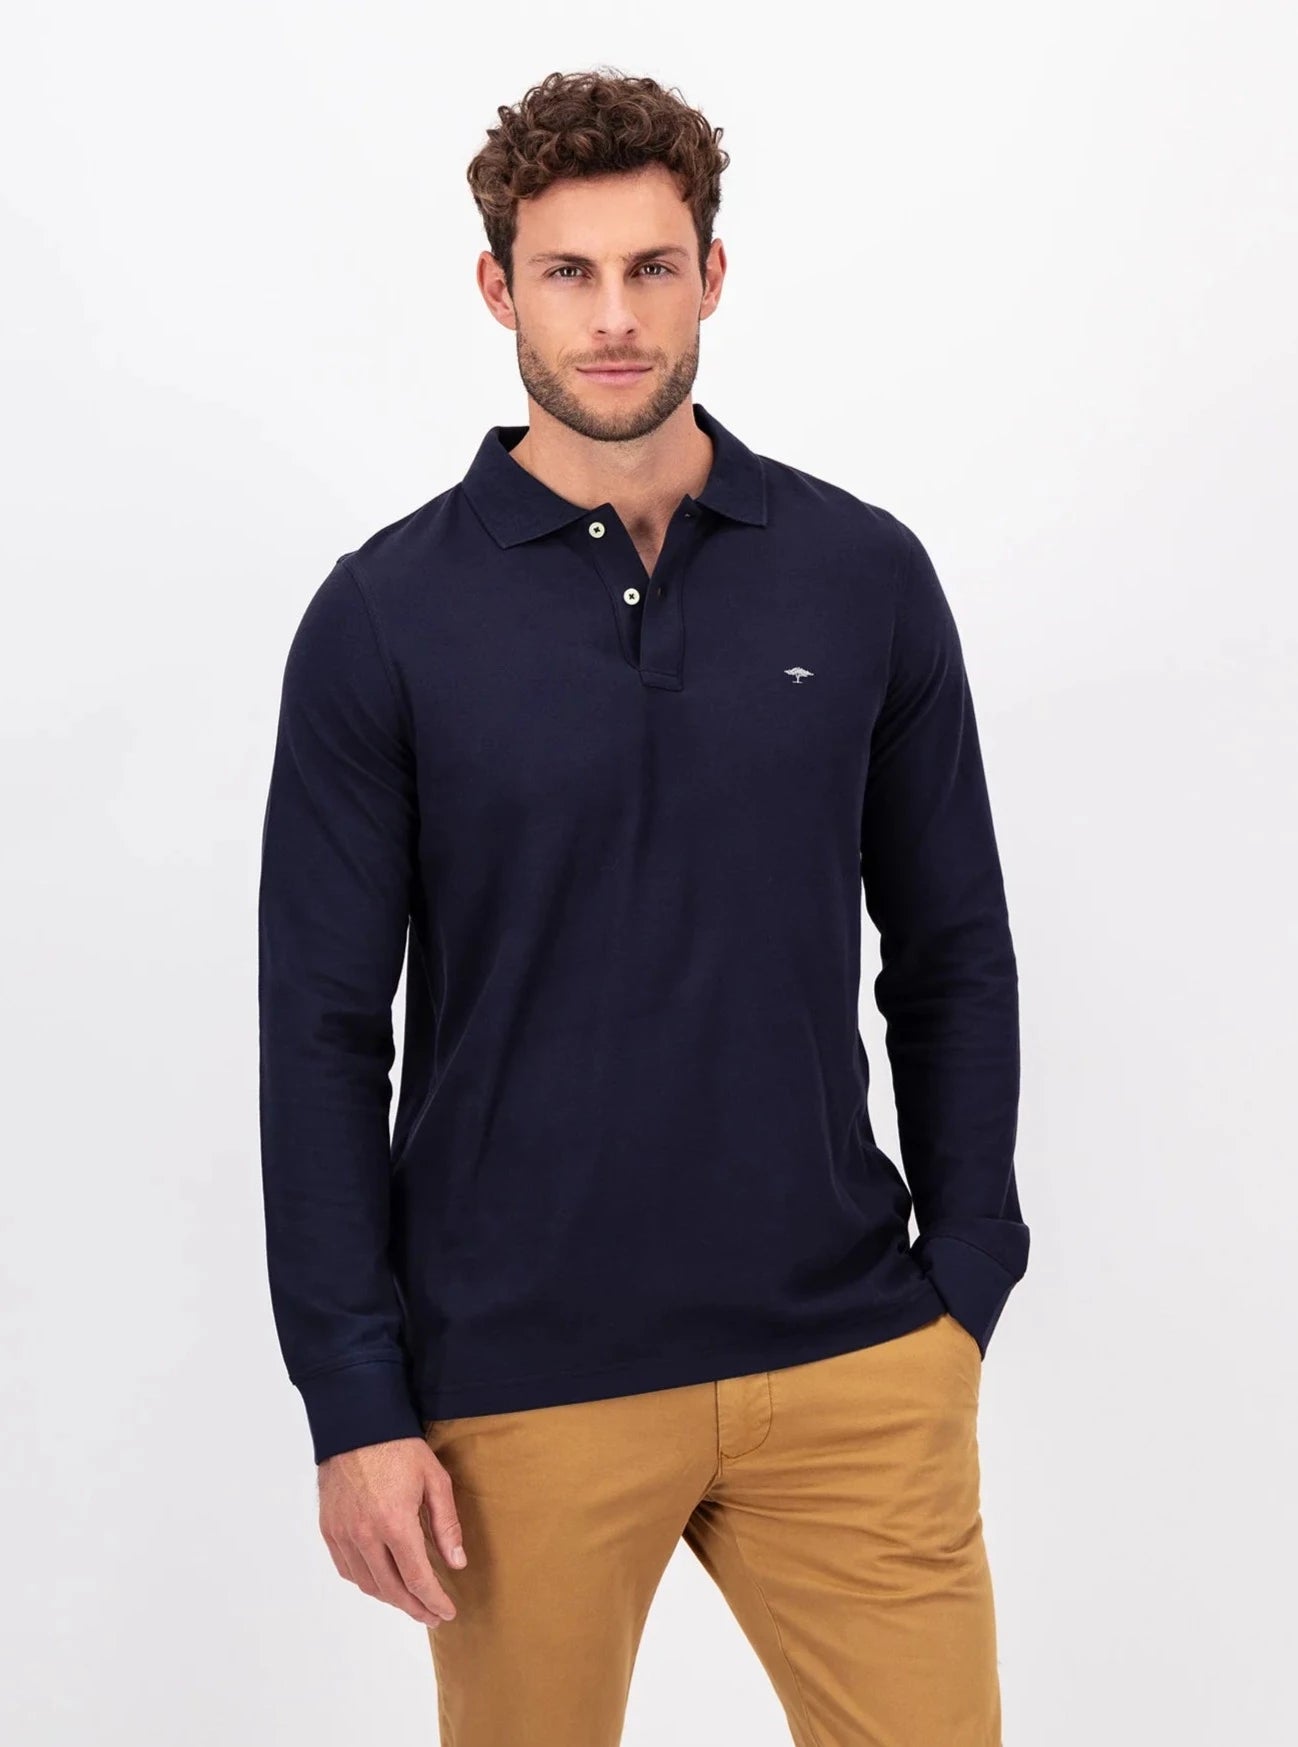 Long – Sleeve FYNCH-HATTON Polo Shirt